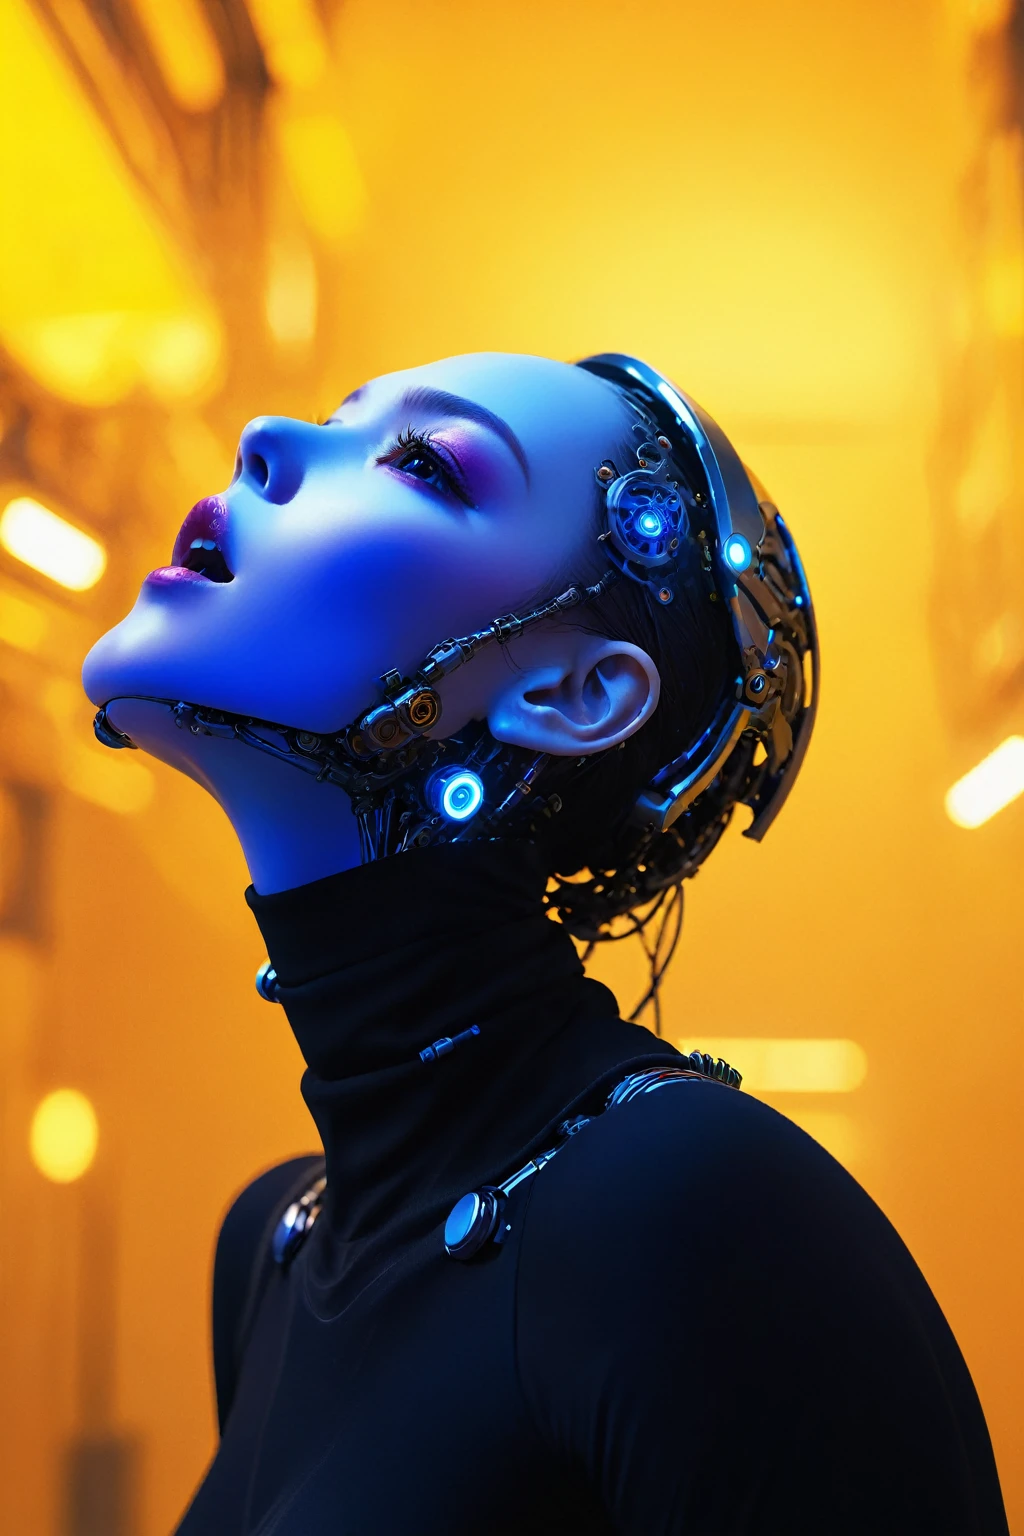 de primera calidad、​obra maestra、超Una alta resolución、(Fotorrealista:1.4)、((una chica de belleza:1.6)), 1 chica cyborg de cuerpo completo、dieciséis años、NO humanos、((La parte de piel es solo la cara.)), ojos luminosos、((Muchos protectores de pecho de metal dividido.)), robots metálicos、((Todo el cuerpo es el cuerpo de un robot de combate.))、((Las partes del cuerpo son partes de robots.:1.8))、((Los mecanismos internos del tórax quedan expuestos.)), ((Armadura de pecho mecánica con indicadores LED y medidores.)), Brazos y piernas de robot、((Esqueleto de metal expuesto of the abdomen))、Esqueleto metálico de la región cervical.、Bajo reparación、cuerpo destruido、Sujetador mecánico de metal.、Piel metálica de cuerpo completo、Body Metálico、Escamas metálicas que cubren todo el cuerpo.、cuerpo hecho de metal、metal de todo el cuerpo、una chica de belleza、mano protésica、artificial leg、cyborg de cuerpo completo、Esqueleto de metal expuesto、Asian Beauty、ciberpunk、steampunc、Dentro del acorazado espacial futurista、laboratorio、Compleja representación 3D de perfil de porcelana hermosa cara de android de tipo femenino ultra detallada、cabello castaño oscuro、piel brillante、((detalles súper realistas))、portlate、iluminación global、sombra、octan render、rieles、Detalles de adornos complejos.、Detalles de Japón、detalle muy complejo、Luz realista、CGSoation Tendencias、un ojo morado、radiant eyes、Frente a la cámara、detalles de neón extremidades mecánicas、vasos sanguíneos conectados a vértebras tubulares unidas a la espalda、fijación cervical mecánica al cuello、sentado en、Alambres y cables que se conectan a la cabeza.、GUNDAM、Pequeña lámpara LED、​obra maestra、 robots metálicos、cuerpo hecho de metal、metal de todo el cuerpo、mano protésica、artificial leg、cyborg de cuerpo completo、Esqueleto de metal expuesto、Asian Beauty、ciberpunk、steampunc、ciudades futuristas、laboratorio、Compleja representación 3D de perfil de porcelana hermosa cara androide femenina súper detallada、cyborgs、piezas robóticas、150mm、hermoso estudio con luz suave、Luces de llanta、detalle vibrante、lujosocyberpunk、Ren Hao、surrealista、anatómico、músculos de la cara、cable eléctrico microchips、elegante、hermosos fondos、octan render、Estilo HR Giger、8K、de primera calidad、​obra maestra、ilustra arte digital extremadamente detallado